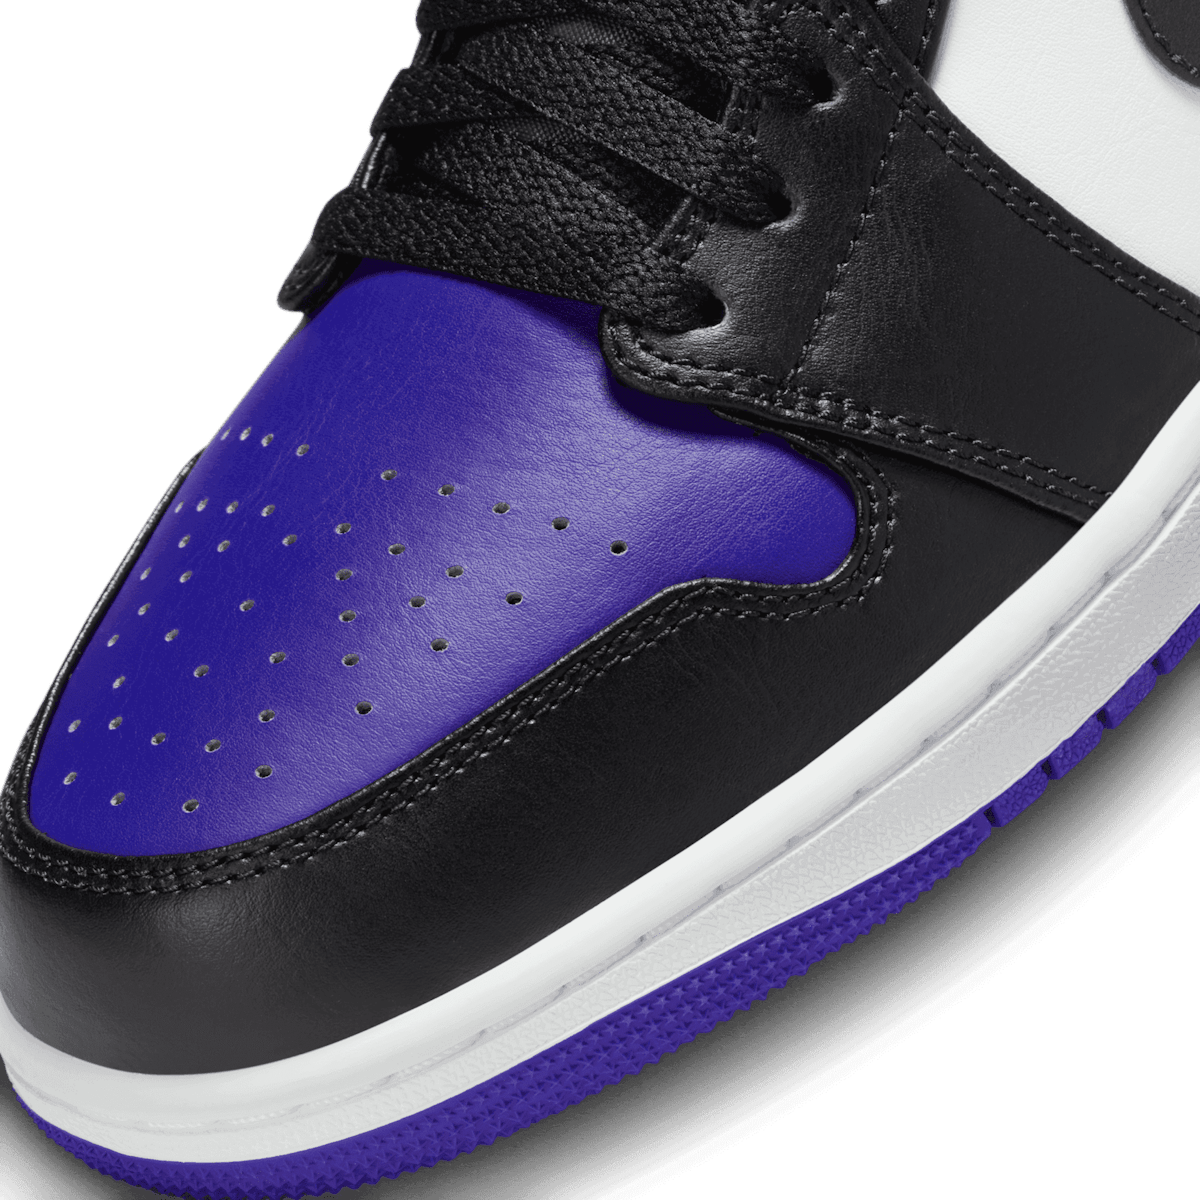 Air Jordan 1 Low Black Toe Grape Angle 4